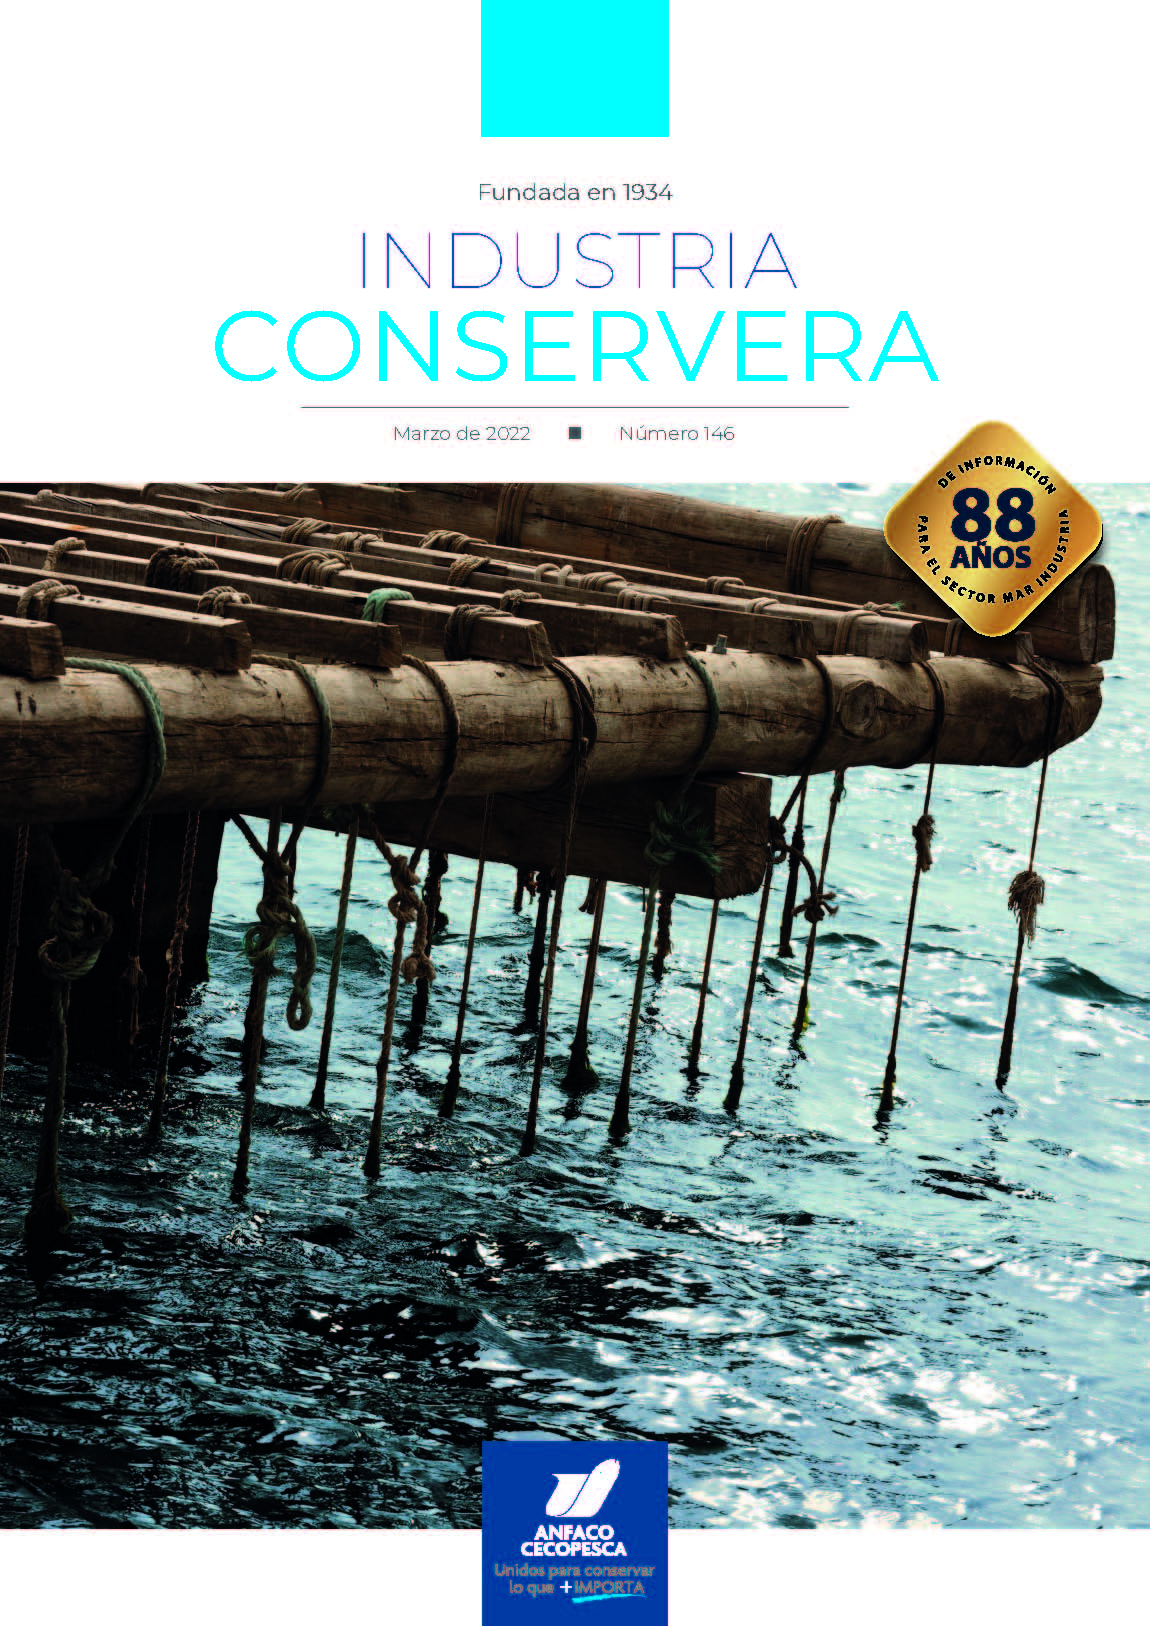  Revista Industria Conservera nº146